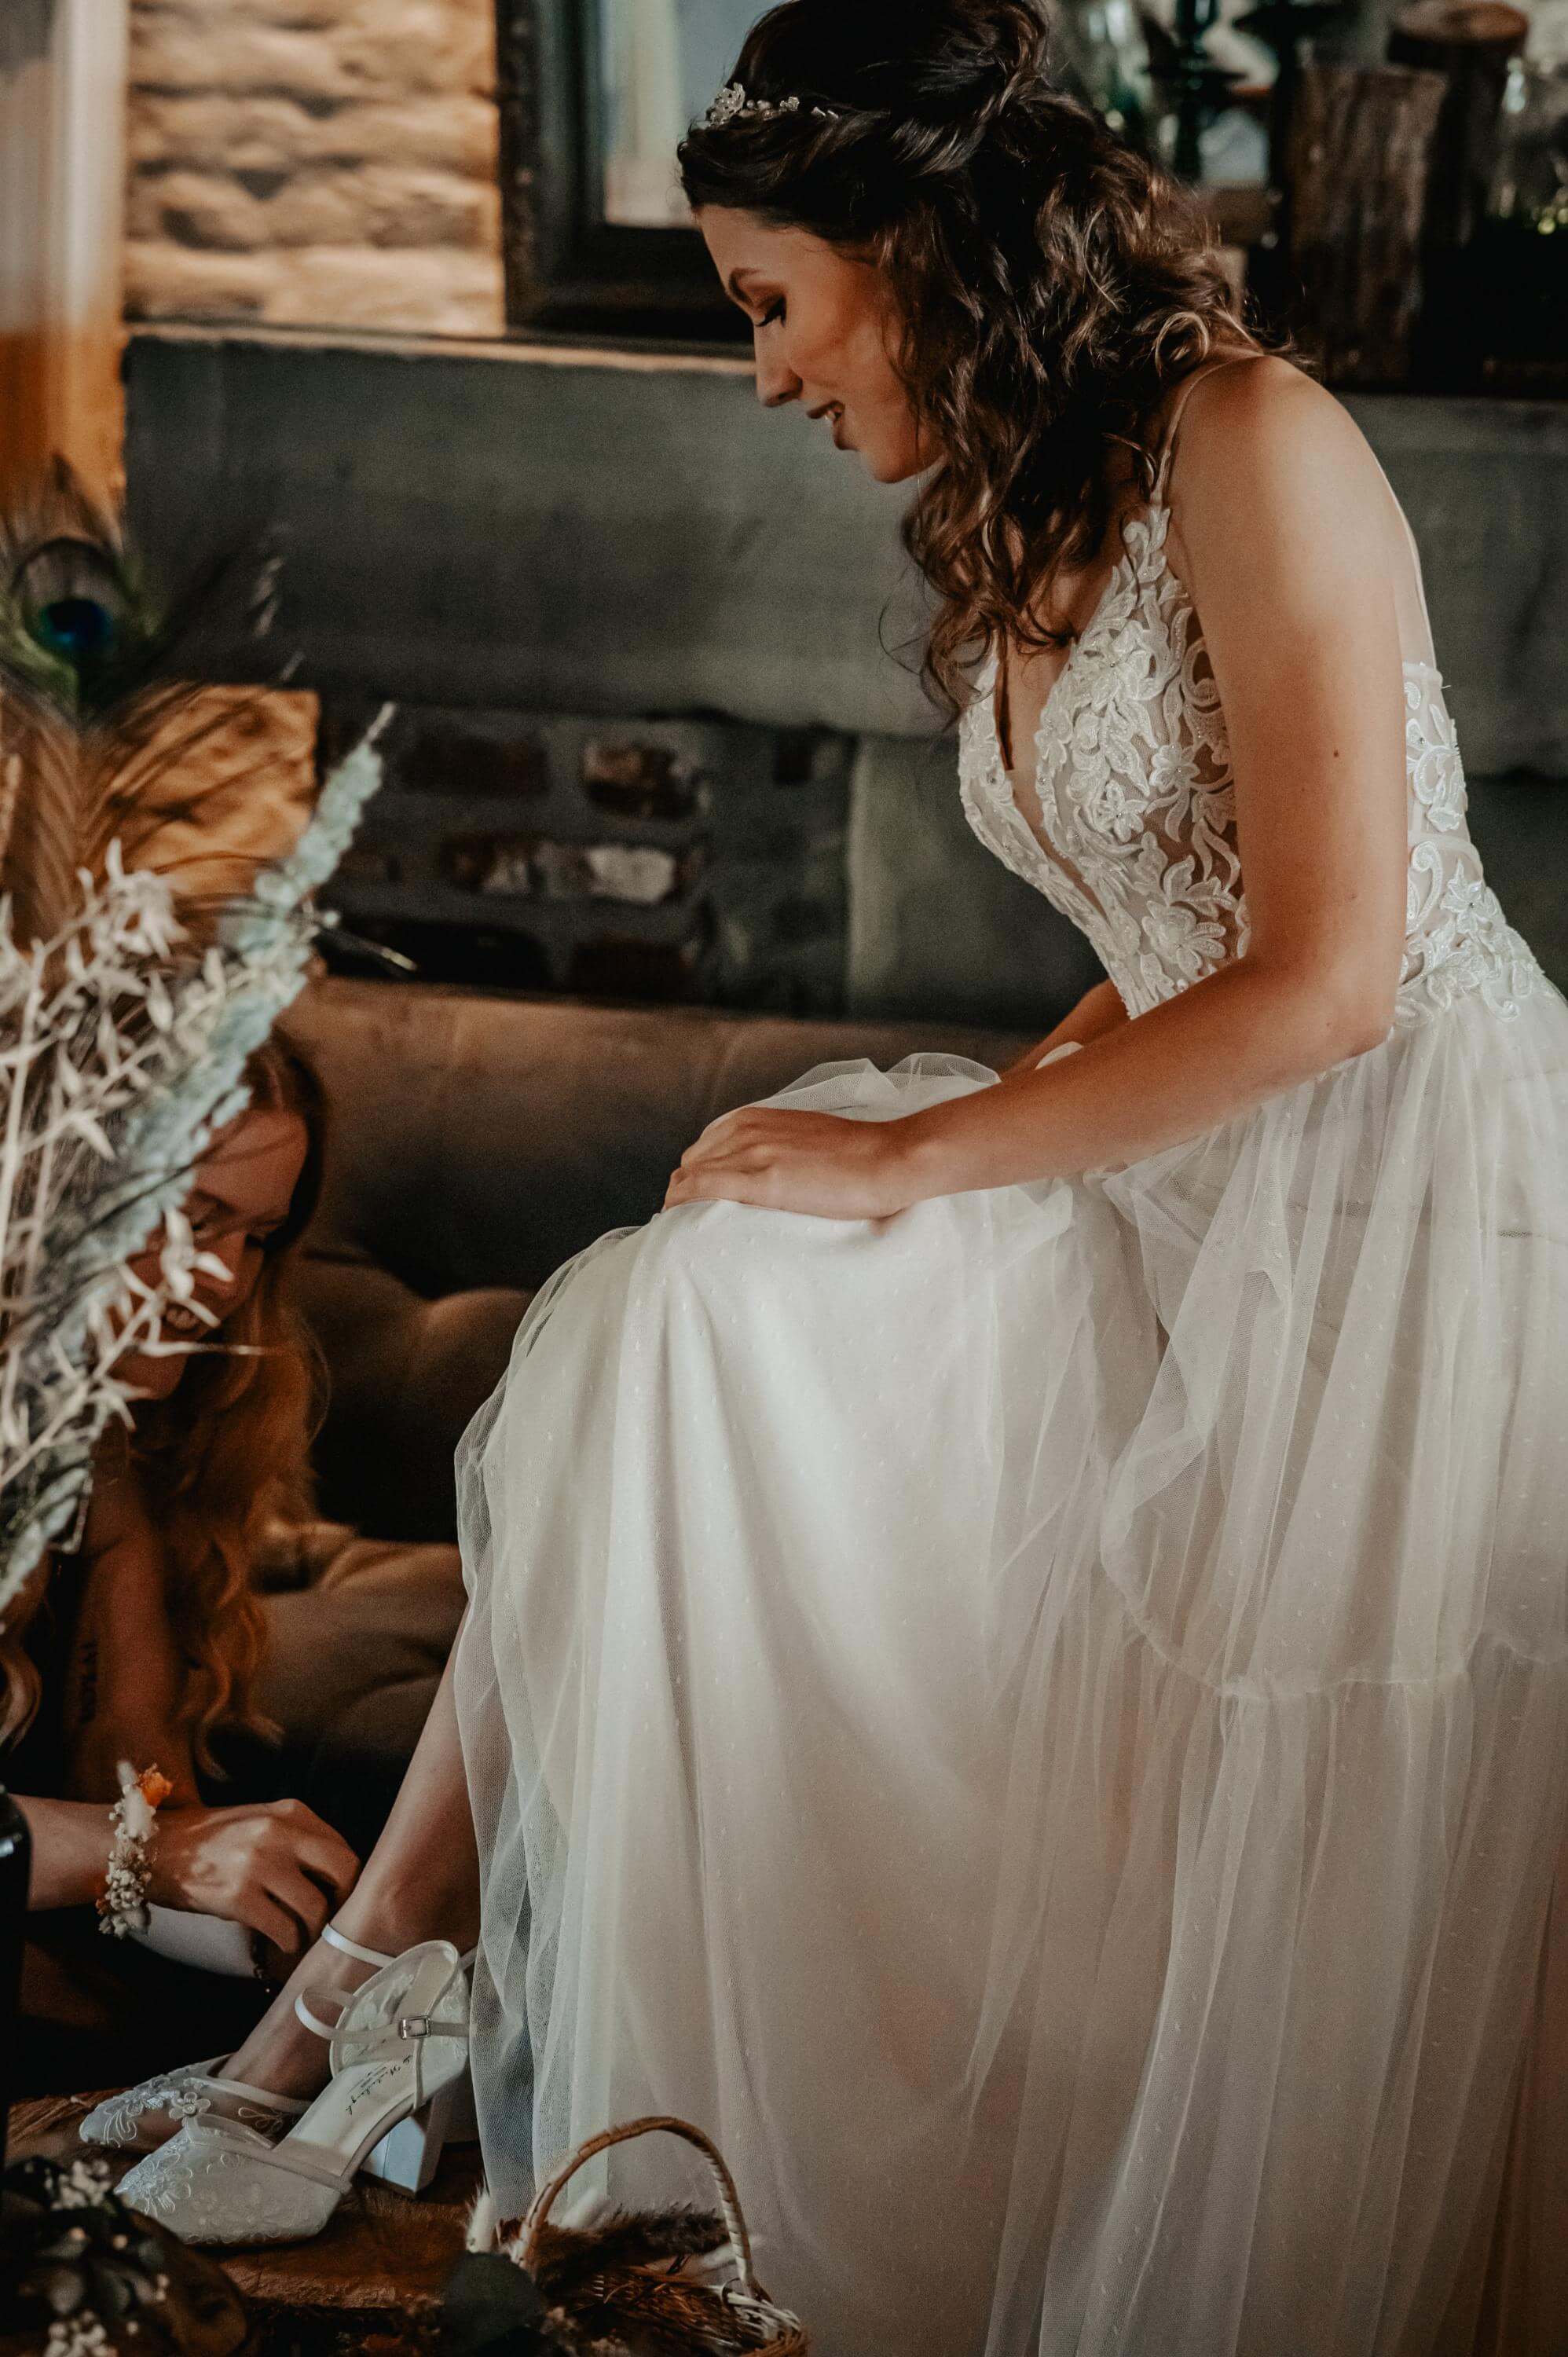 Beim Getting Ready werden der Braut im Hochzeitskleid sitzend die halbhohen offenen Schuhe angezogen.